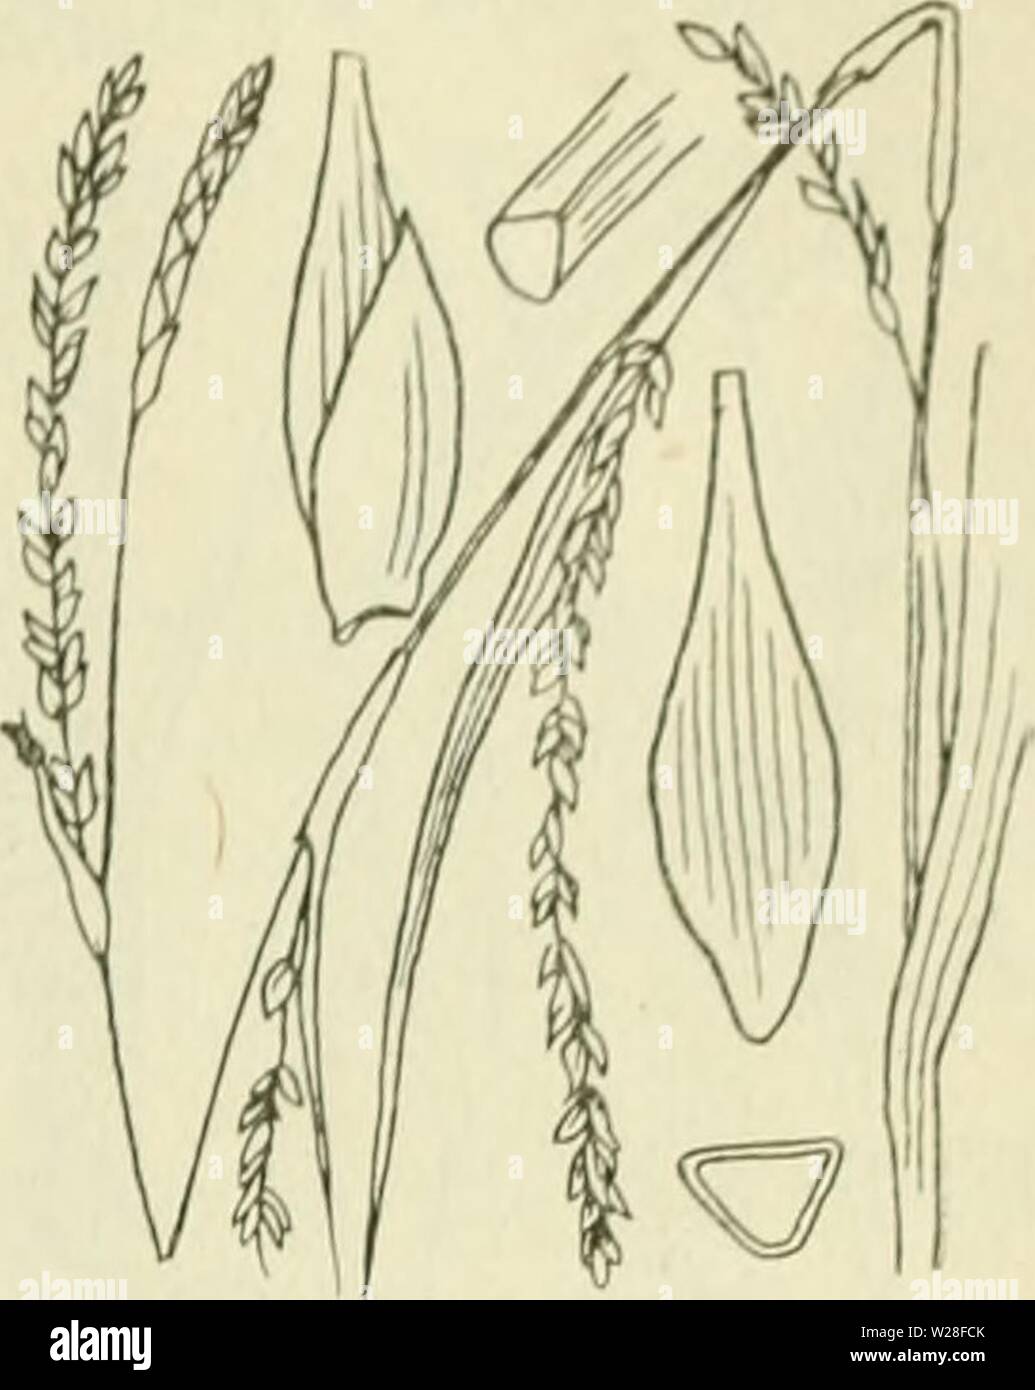 Archiv Bild von Seite 444 De flora van Nederland (1909-11). De flora van Nederland defloravannederl 01 heuk Jahr: 1909-11. FAM 1 L 11:17. - CYPERACEAE. 403 Carex strigosa Abb. 326. zaani auch Ina als iinitjes Ile. Deze (fiÂ". 32 (5) zijn drickantit, '- Iancctvormitj ;- ellipsoÃ ¯ discli, ca. 3 mM lanj,', veelnervi. u, noiei (Jeliji&lt; in der Höhle zeer iiei&lt; notten snavel versmald. Het mannelijke aartje ist los - bloemij;, Smal, verlcn. ud, tof 5 cM lanf,', de kafjes zijn vaak iets bruinachtig' nicht stevijje, Groene middenstreep. De vruchten zijn Zeer klein, nog nicht 2 mM lang, eirond, driekanti. u. Stockfoto